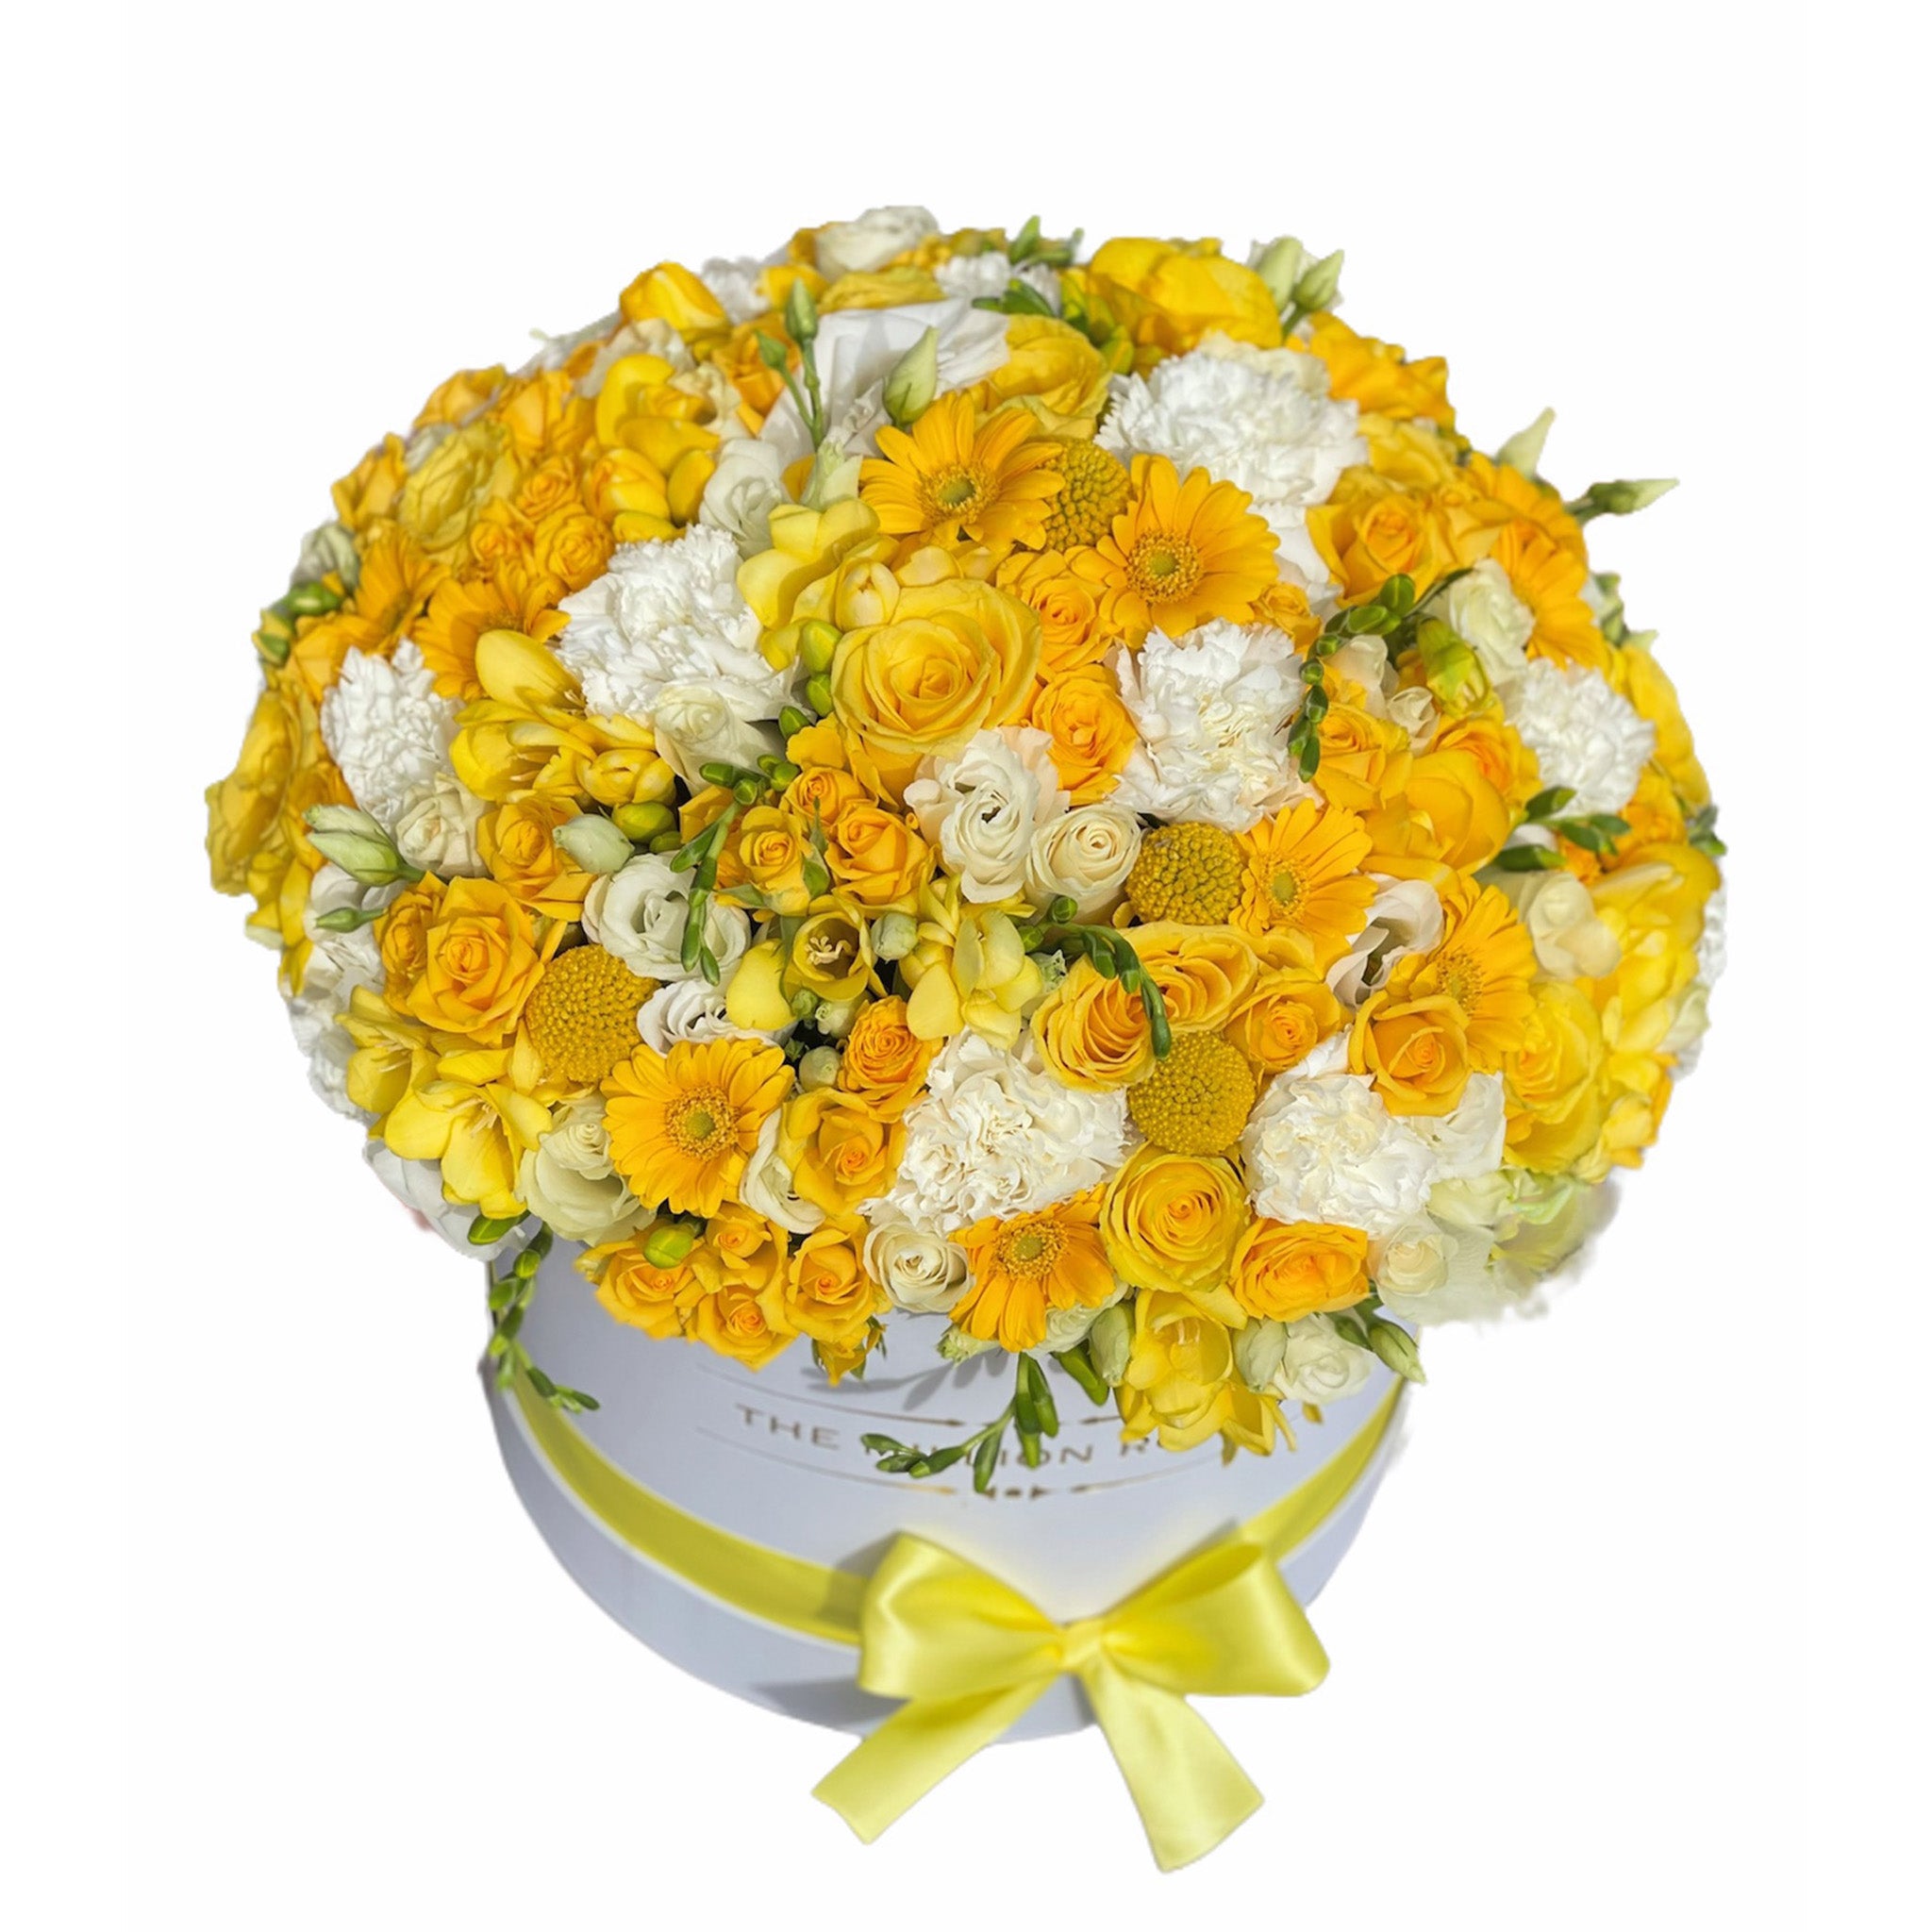 Pocket full of sunshine - aranjament floral de vara cu flori mixte parfumate